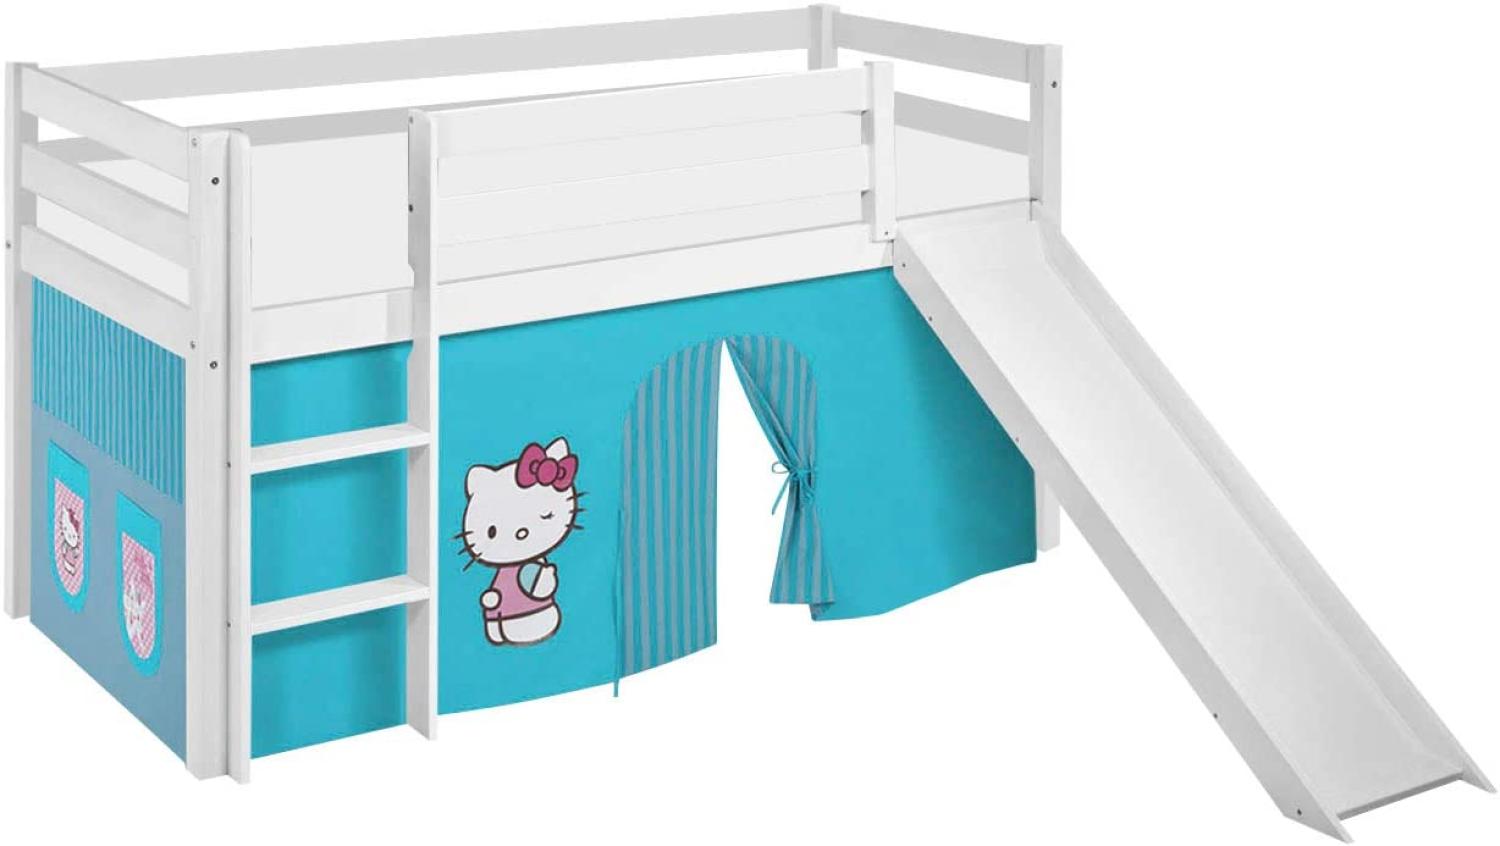 Lilokids 'Jelle' Spielbett 90 x 200 cm, Hello Kitty Türkis, Kiefer massiv, mit Rutsche und Vorhang Bild 1